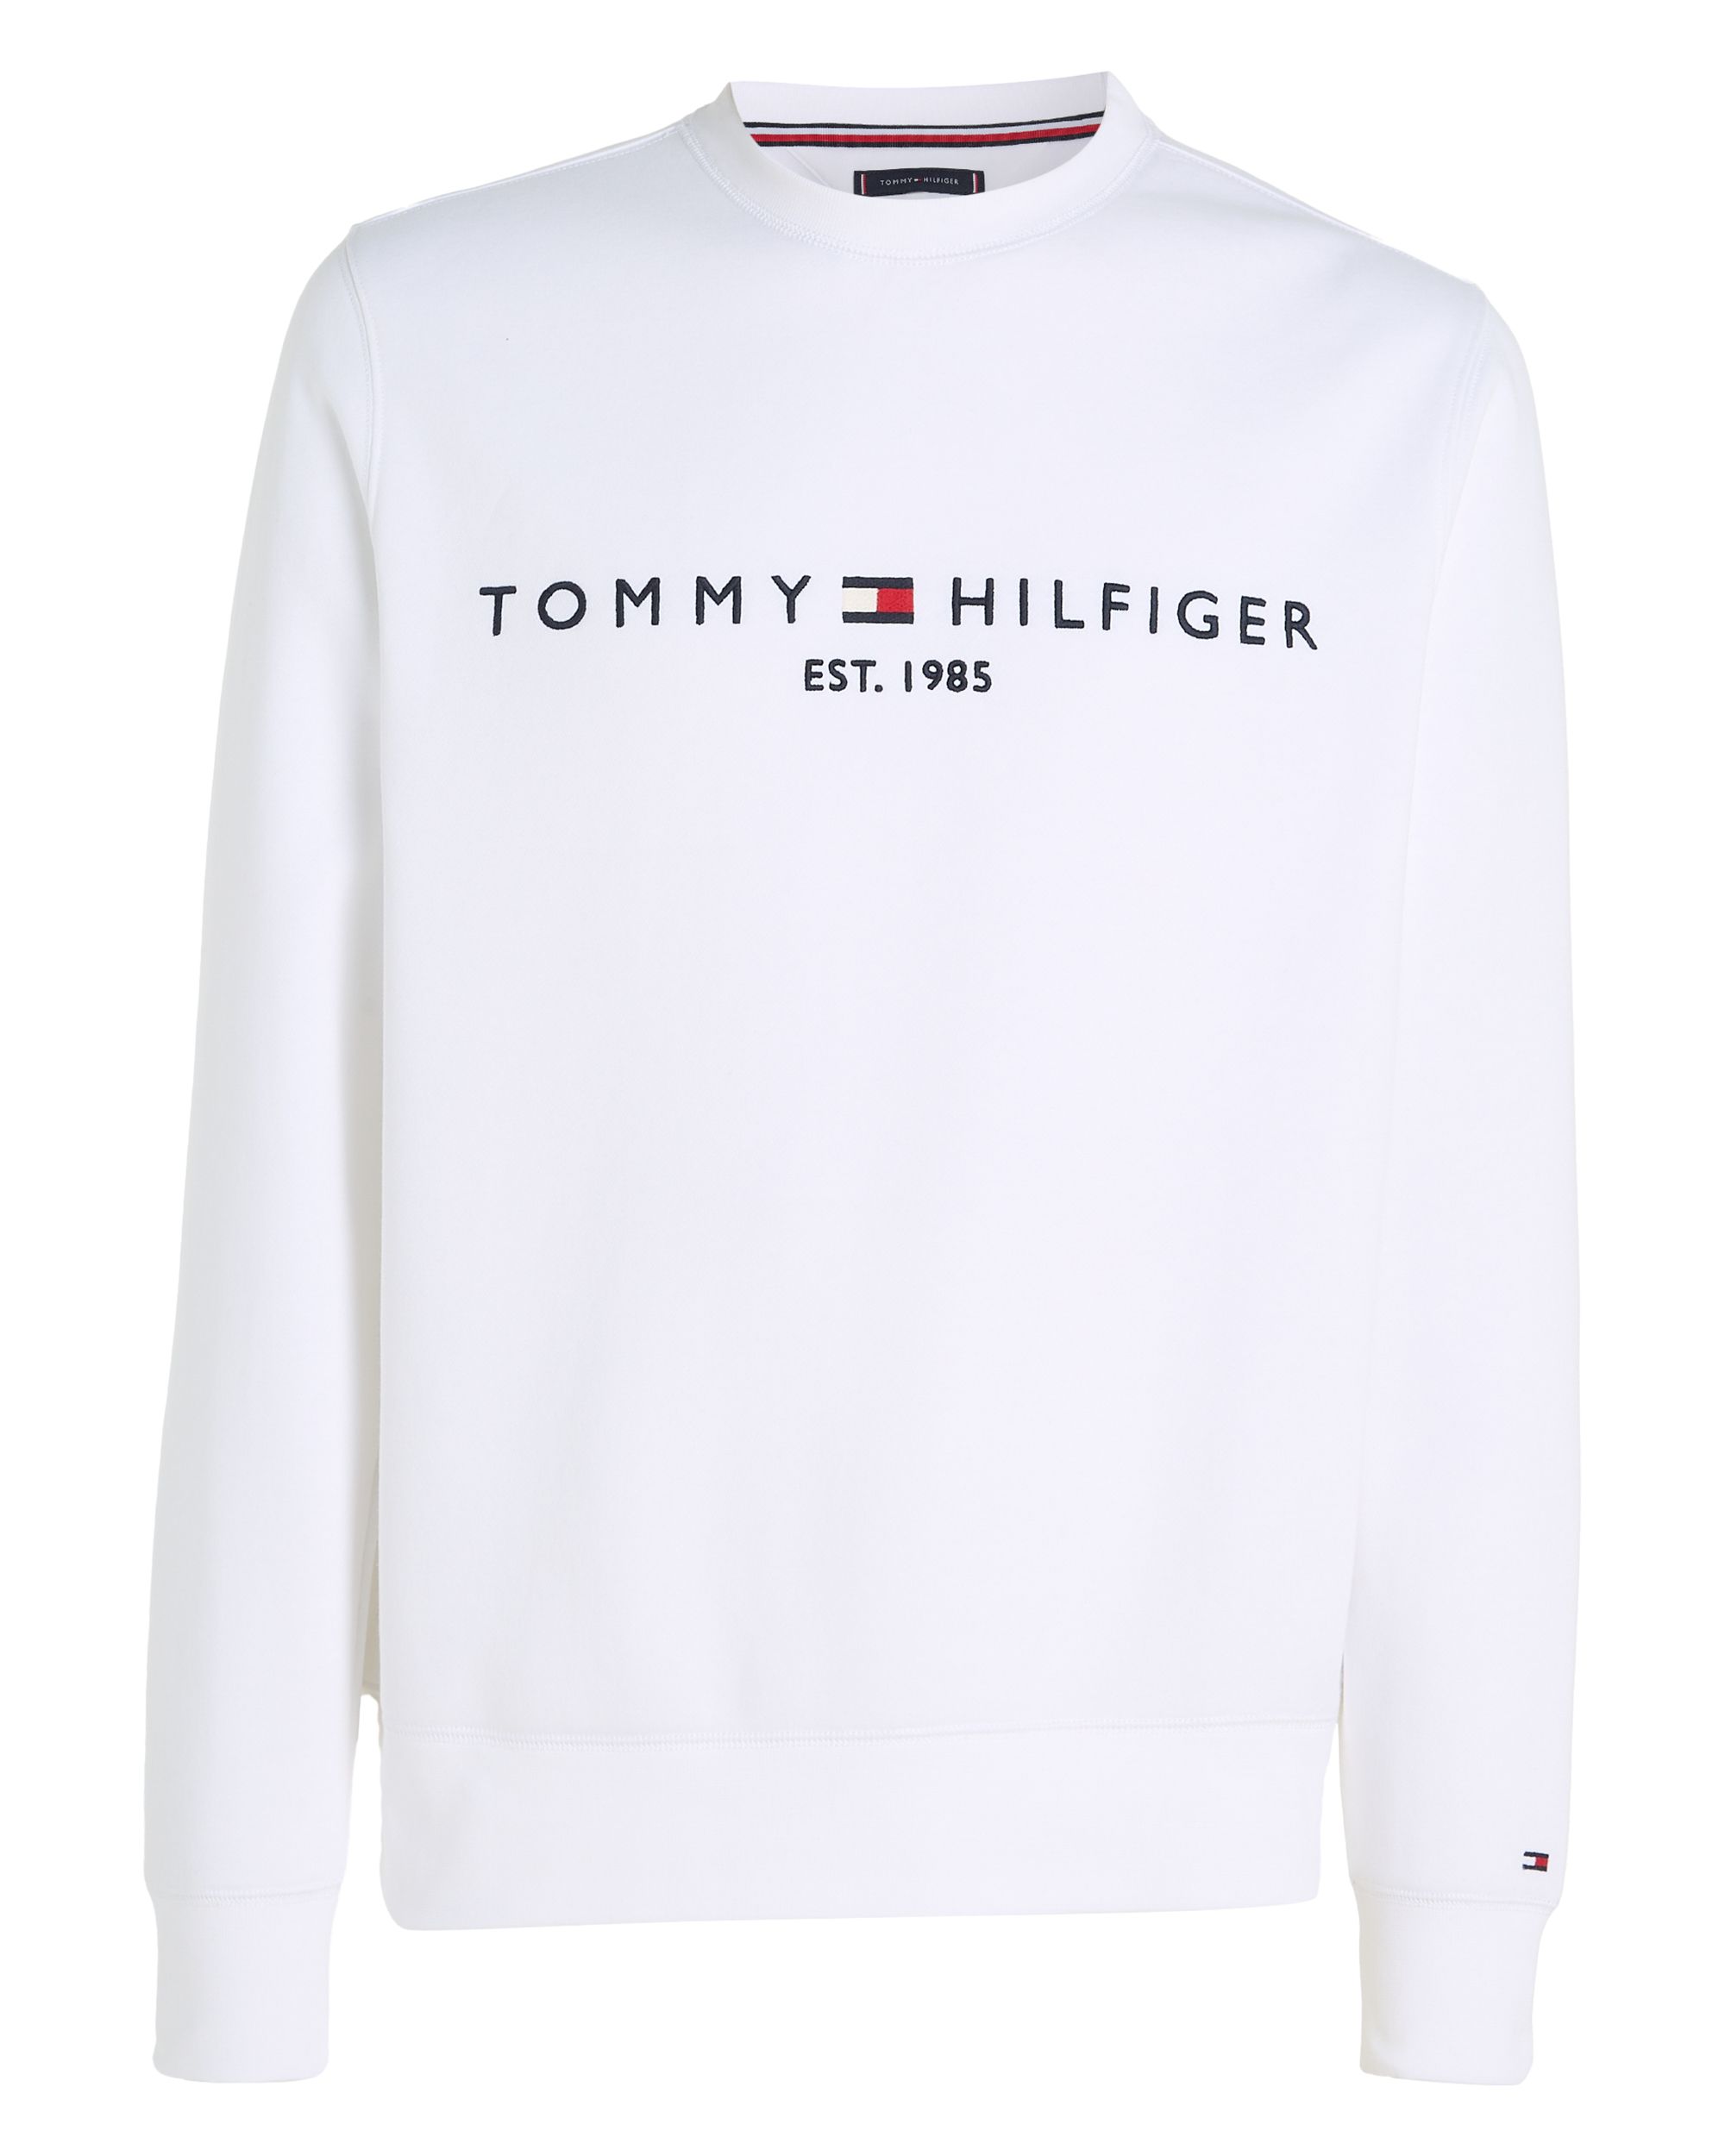 Tommy Hilfiger Menswear Sweater Wit 081215-001-L